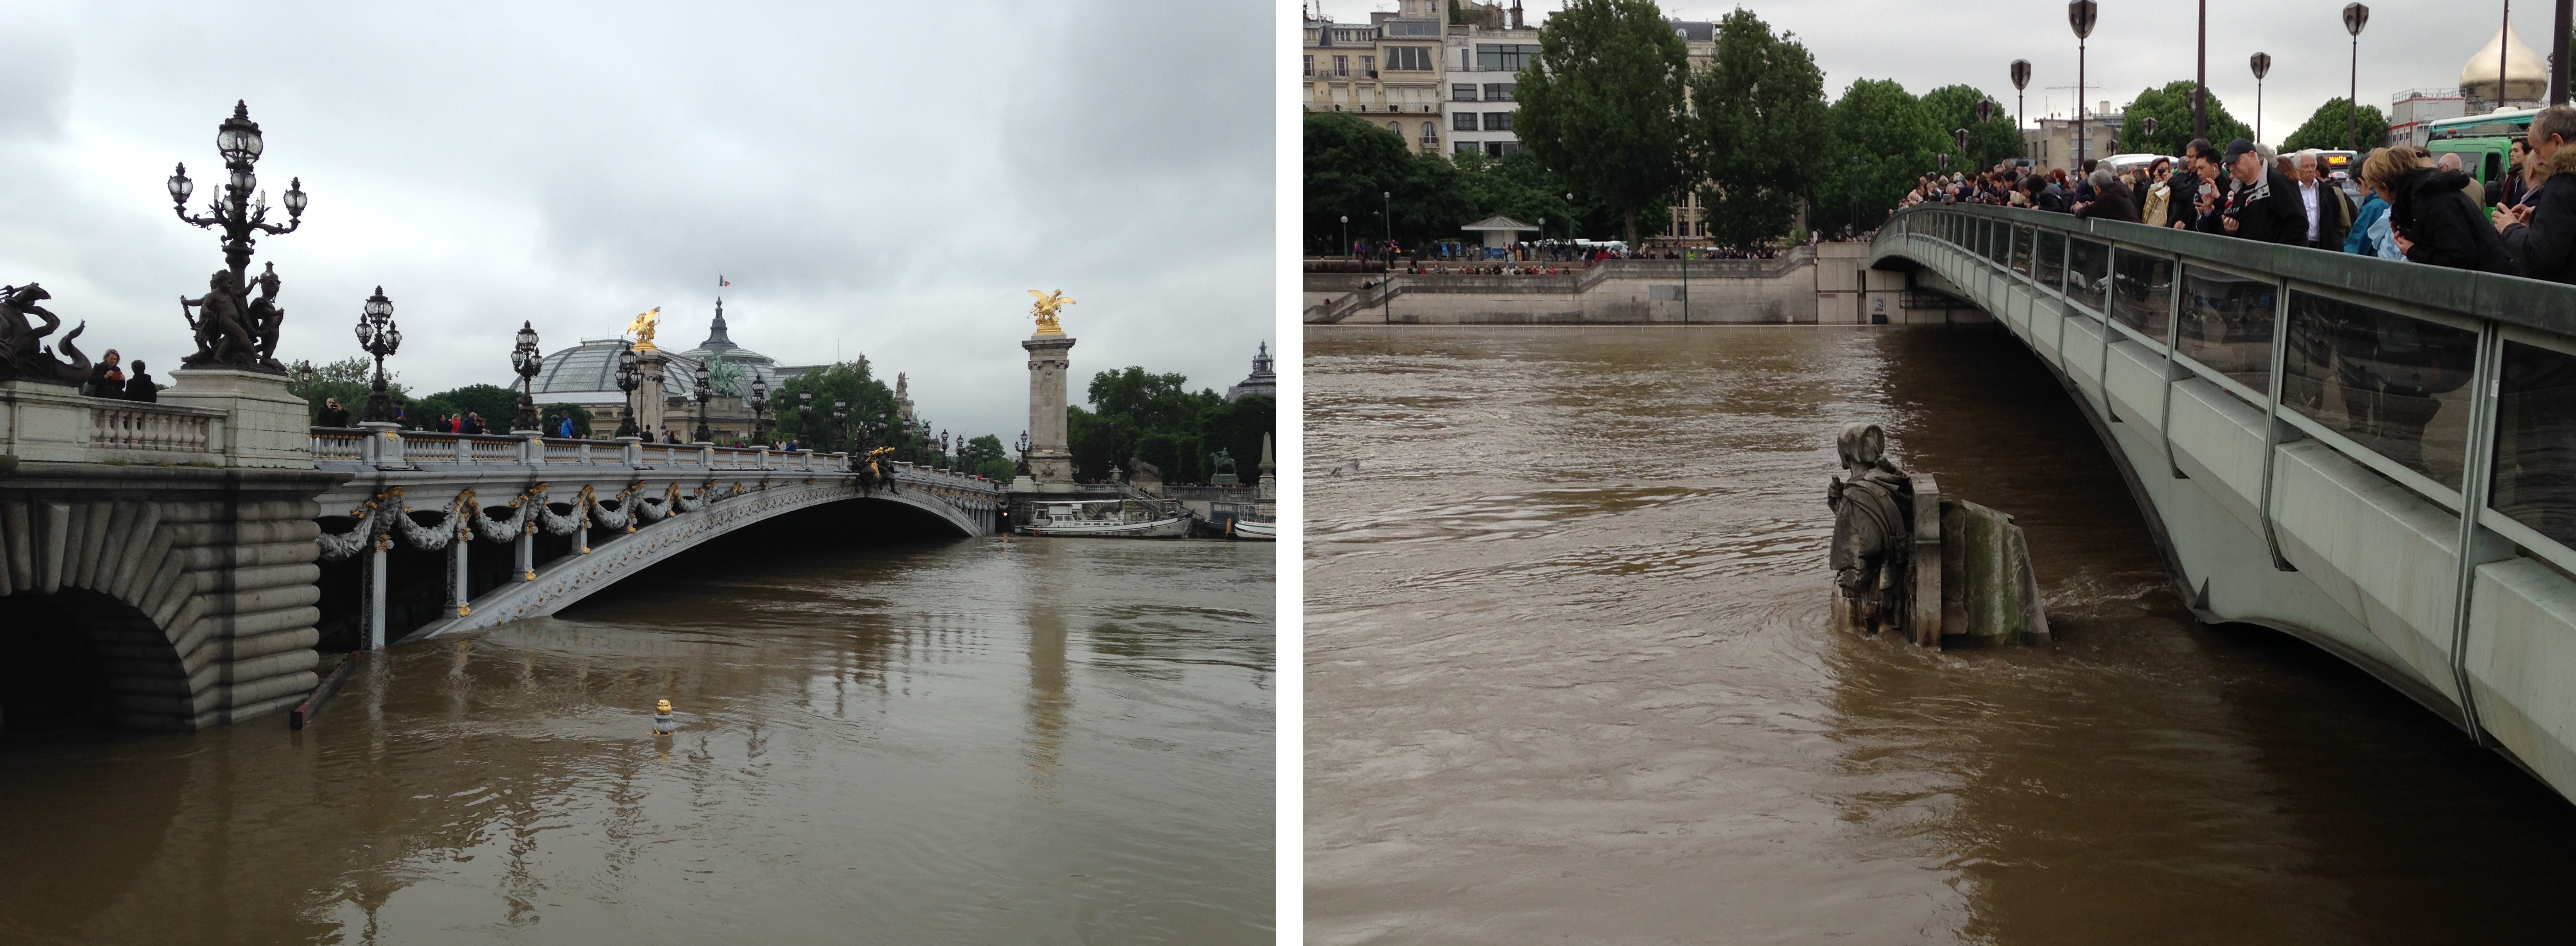 Paris, 3 juin 2016 après midi, peu avant le pic de crue